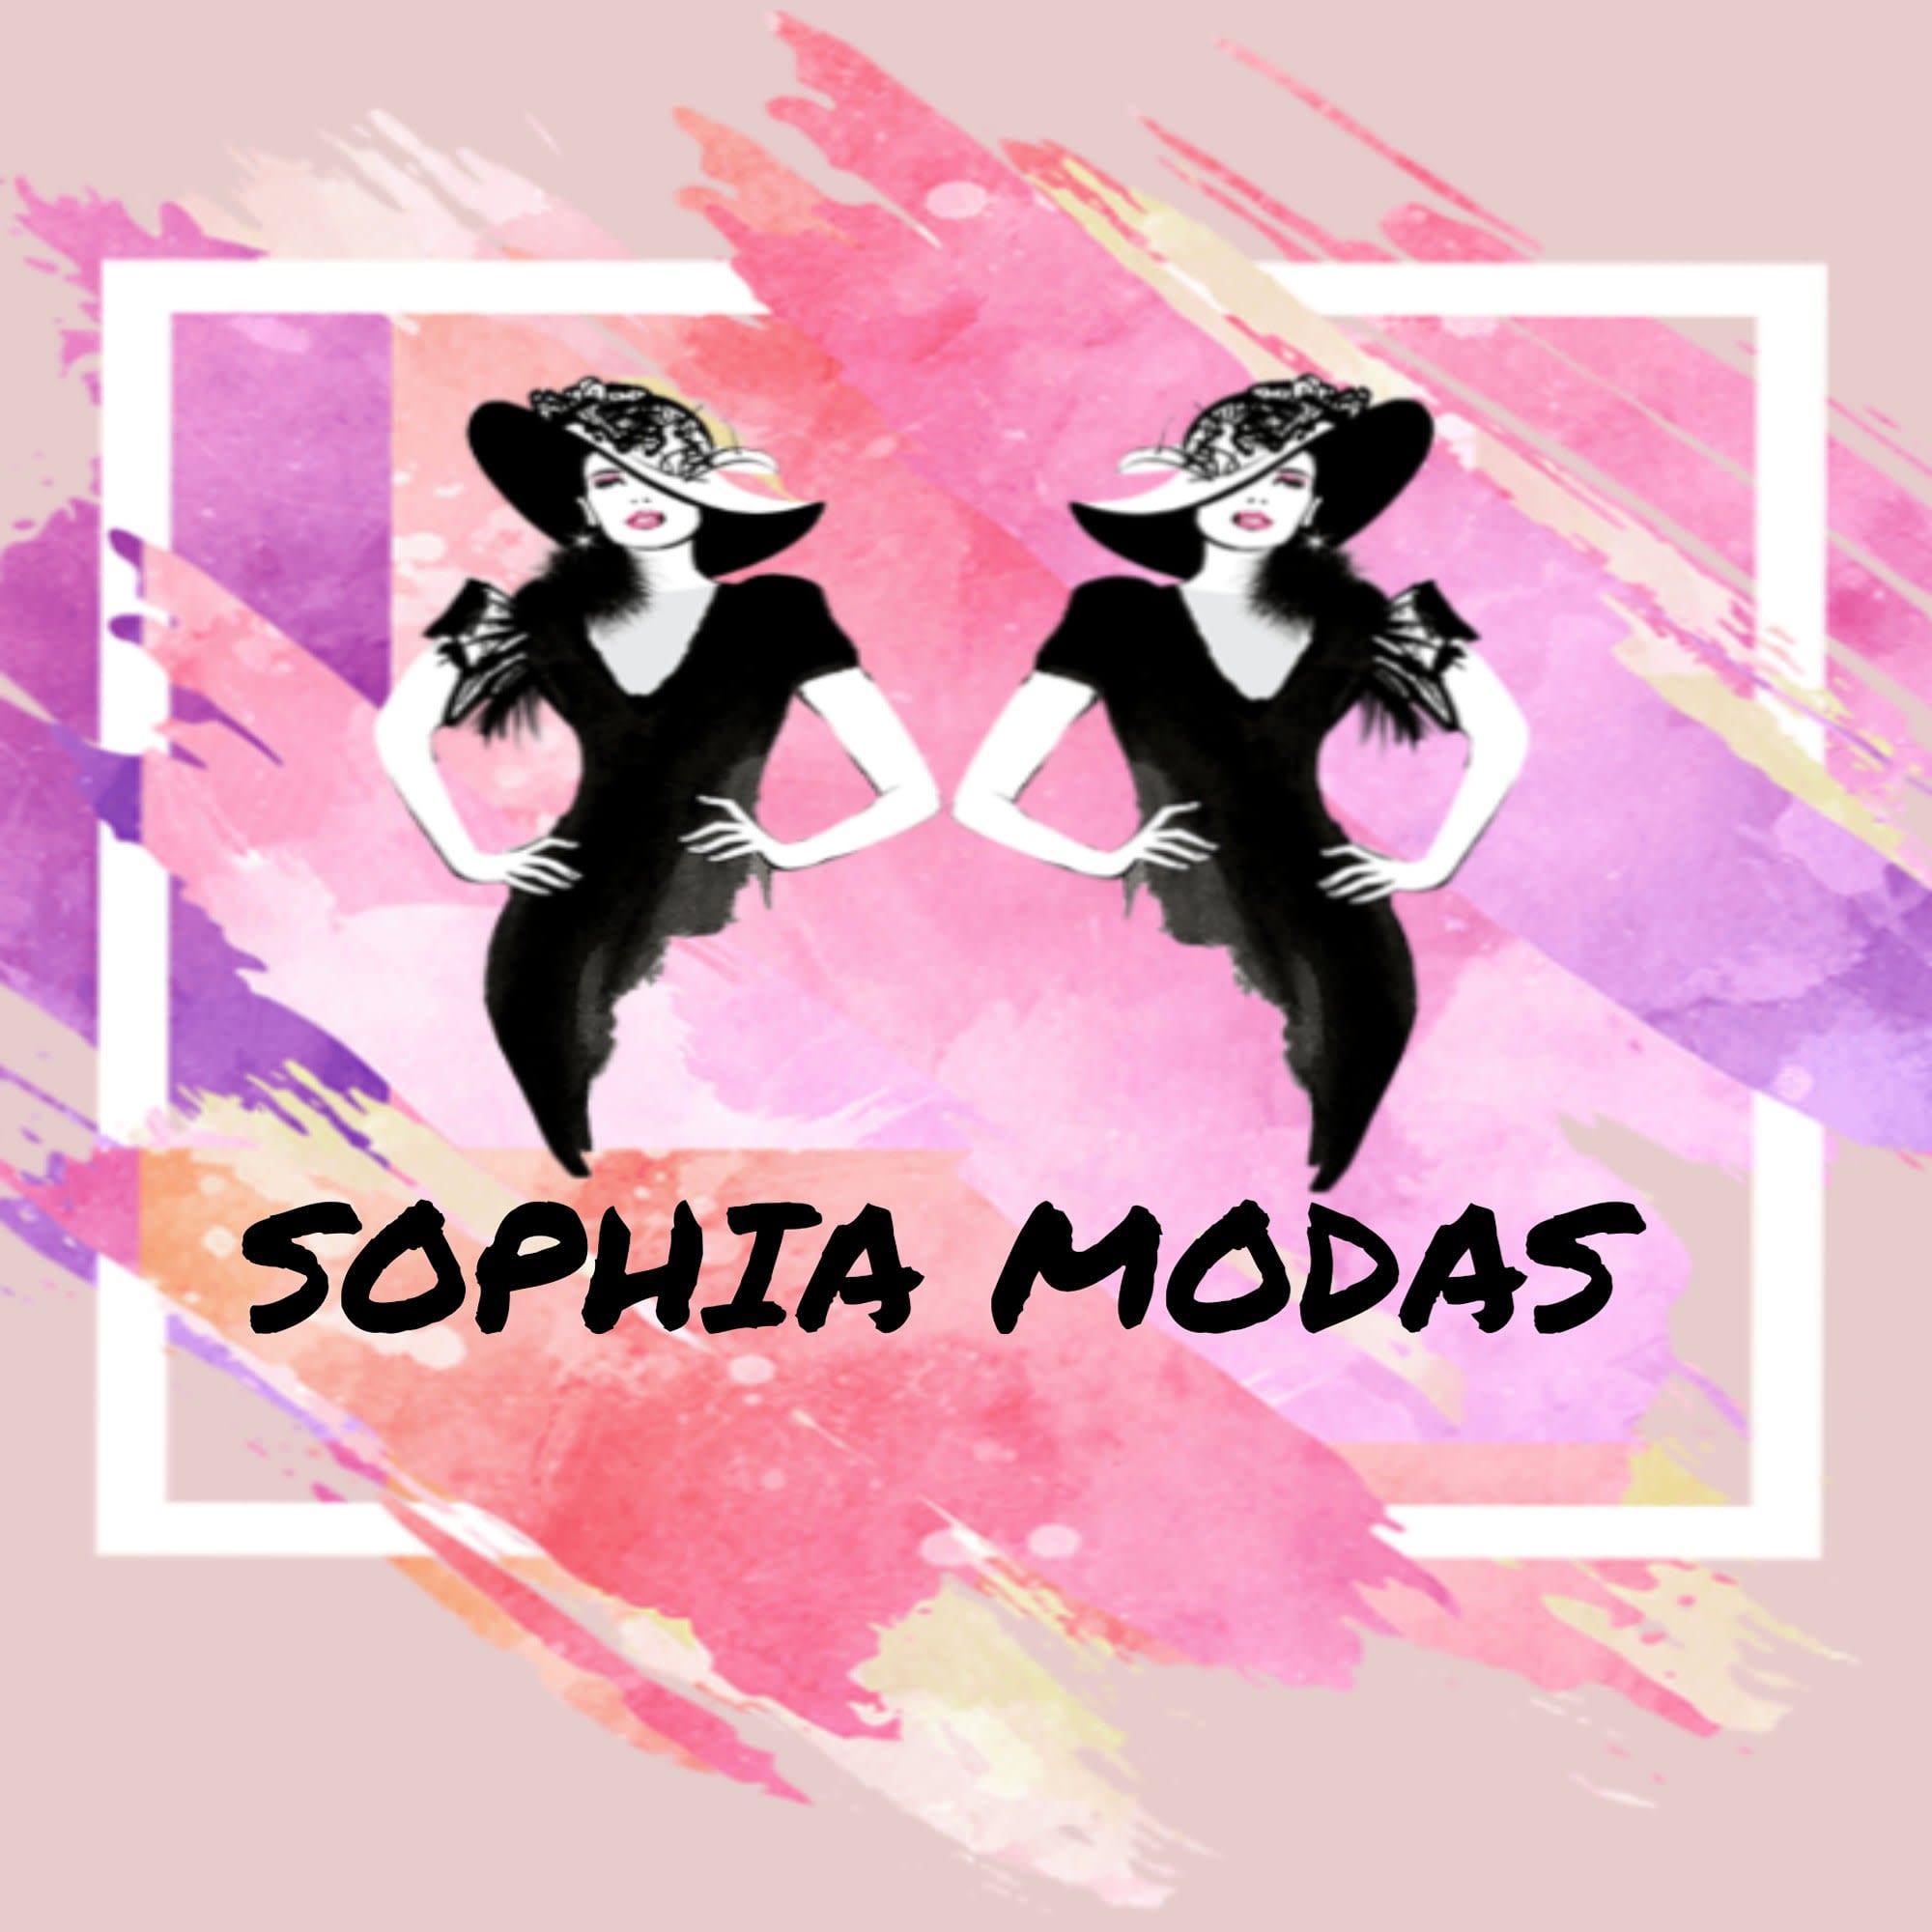 Sophia Modas